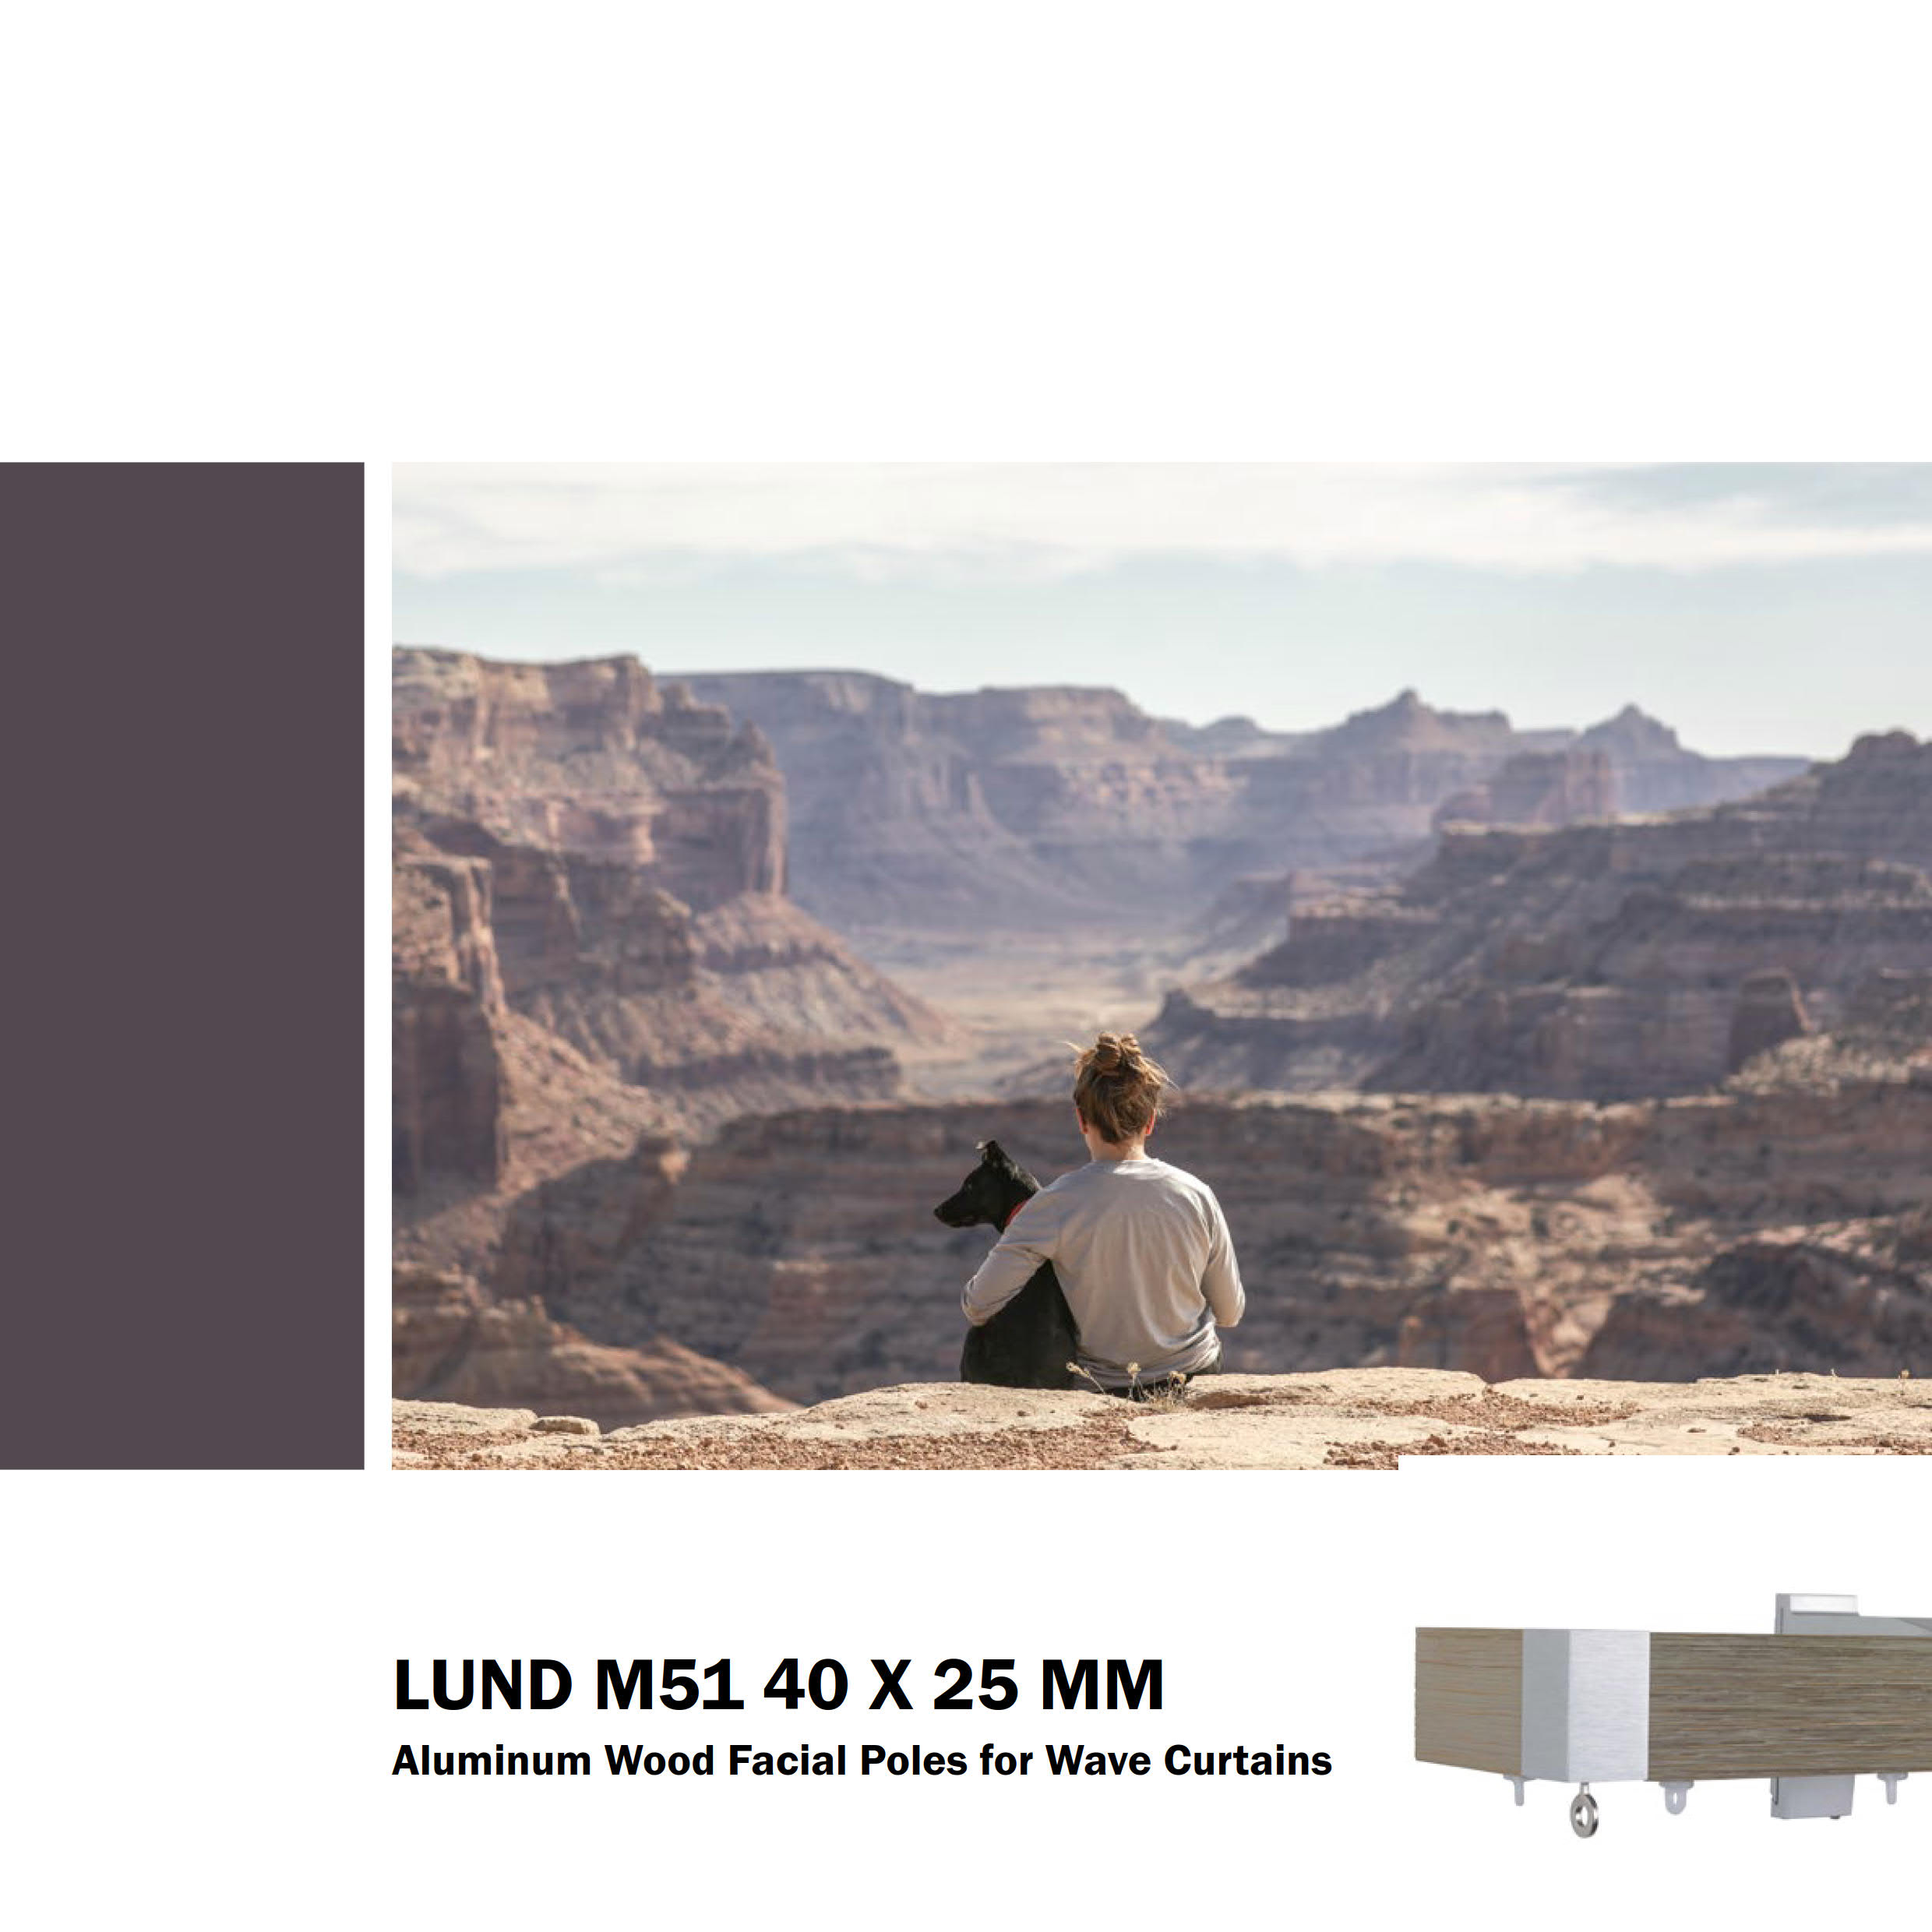 Lund M51 40 x 25mm